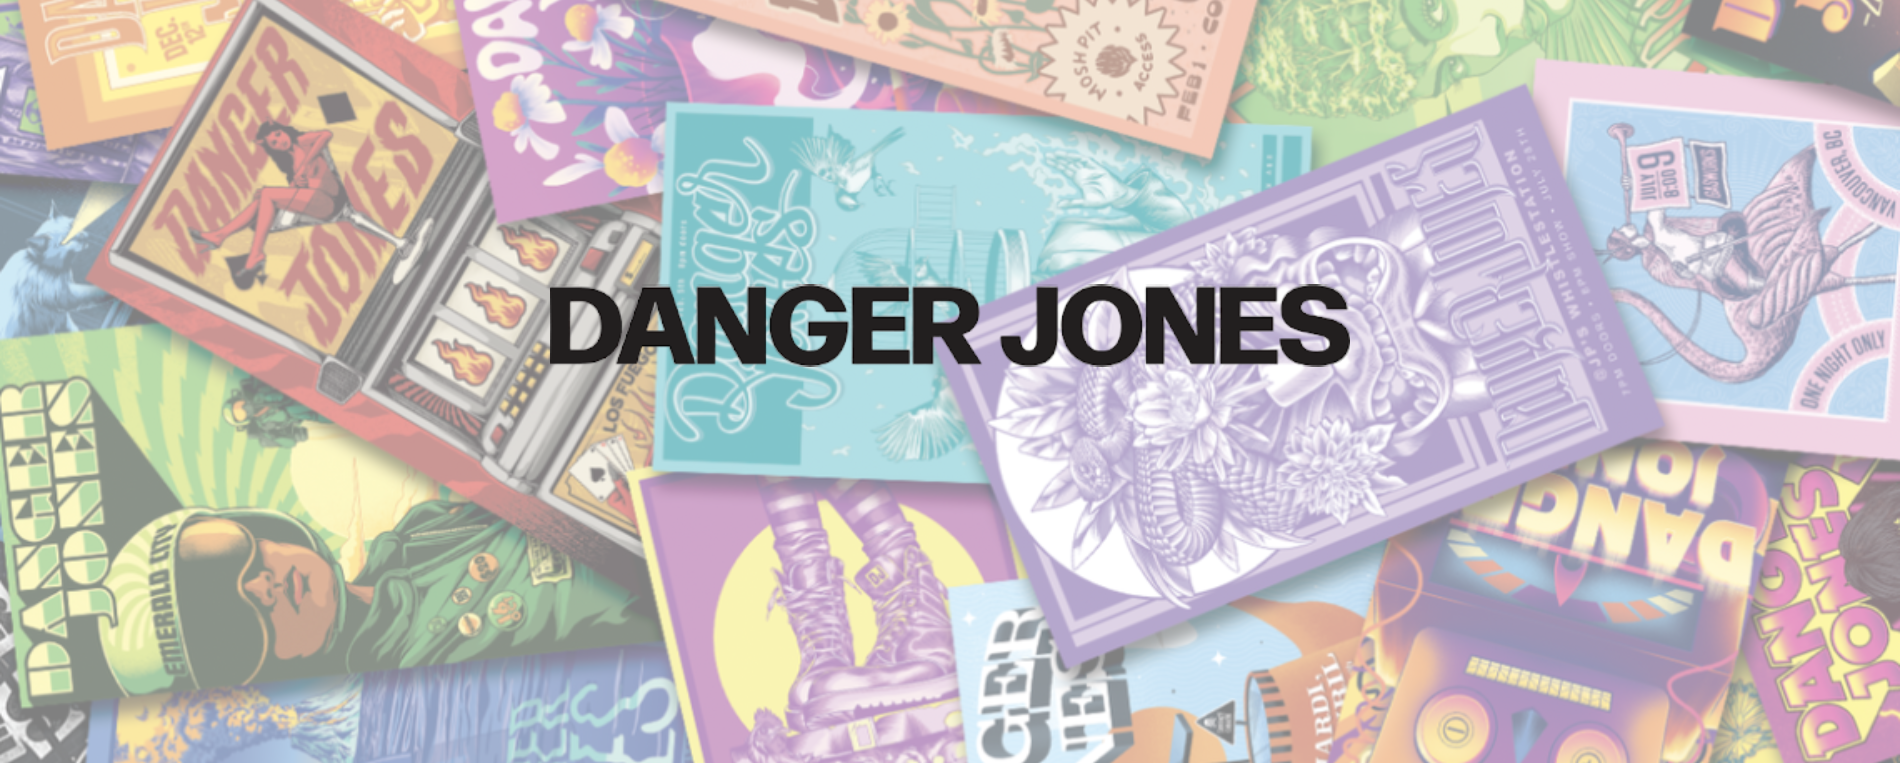 danger-jones